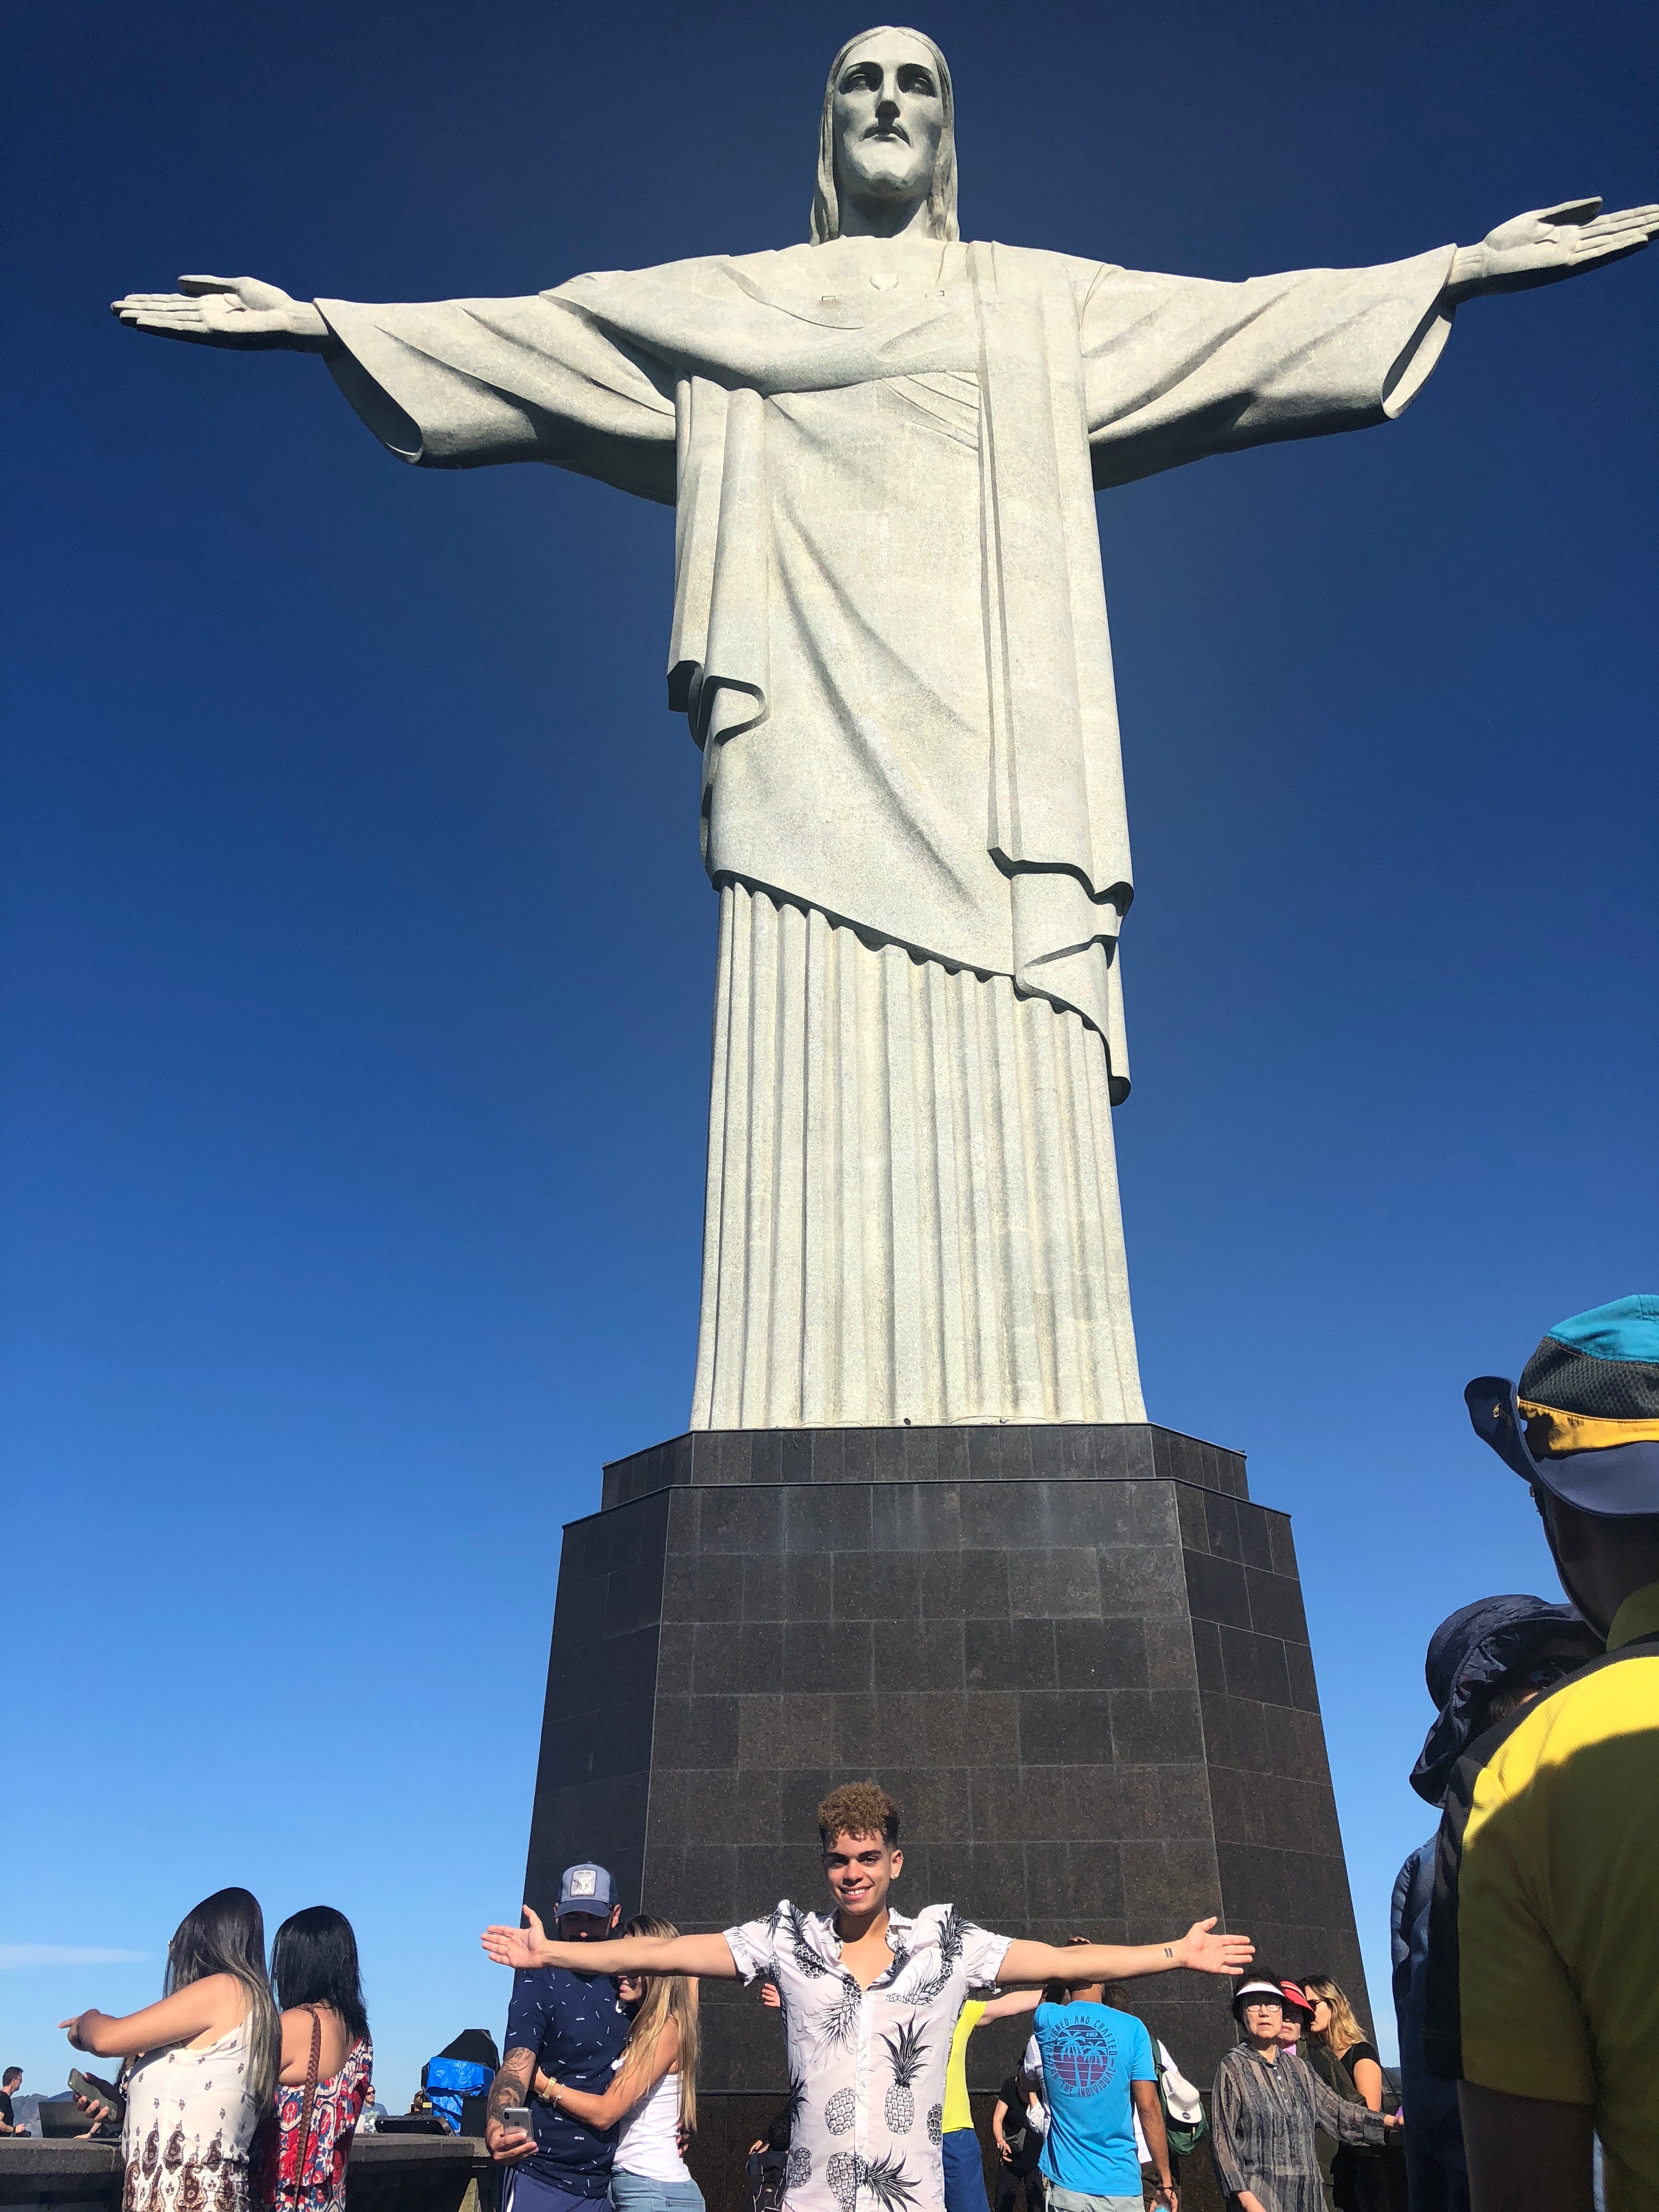 In Rio